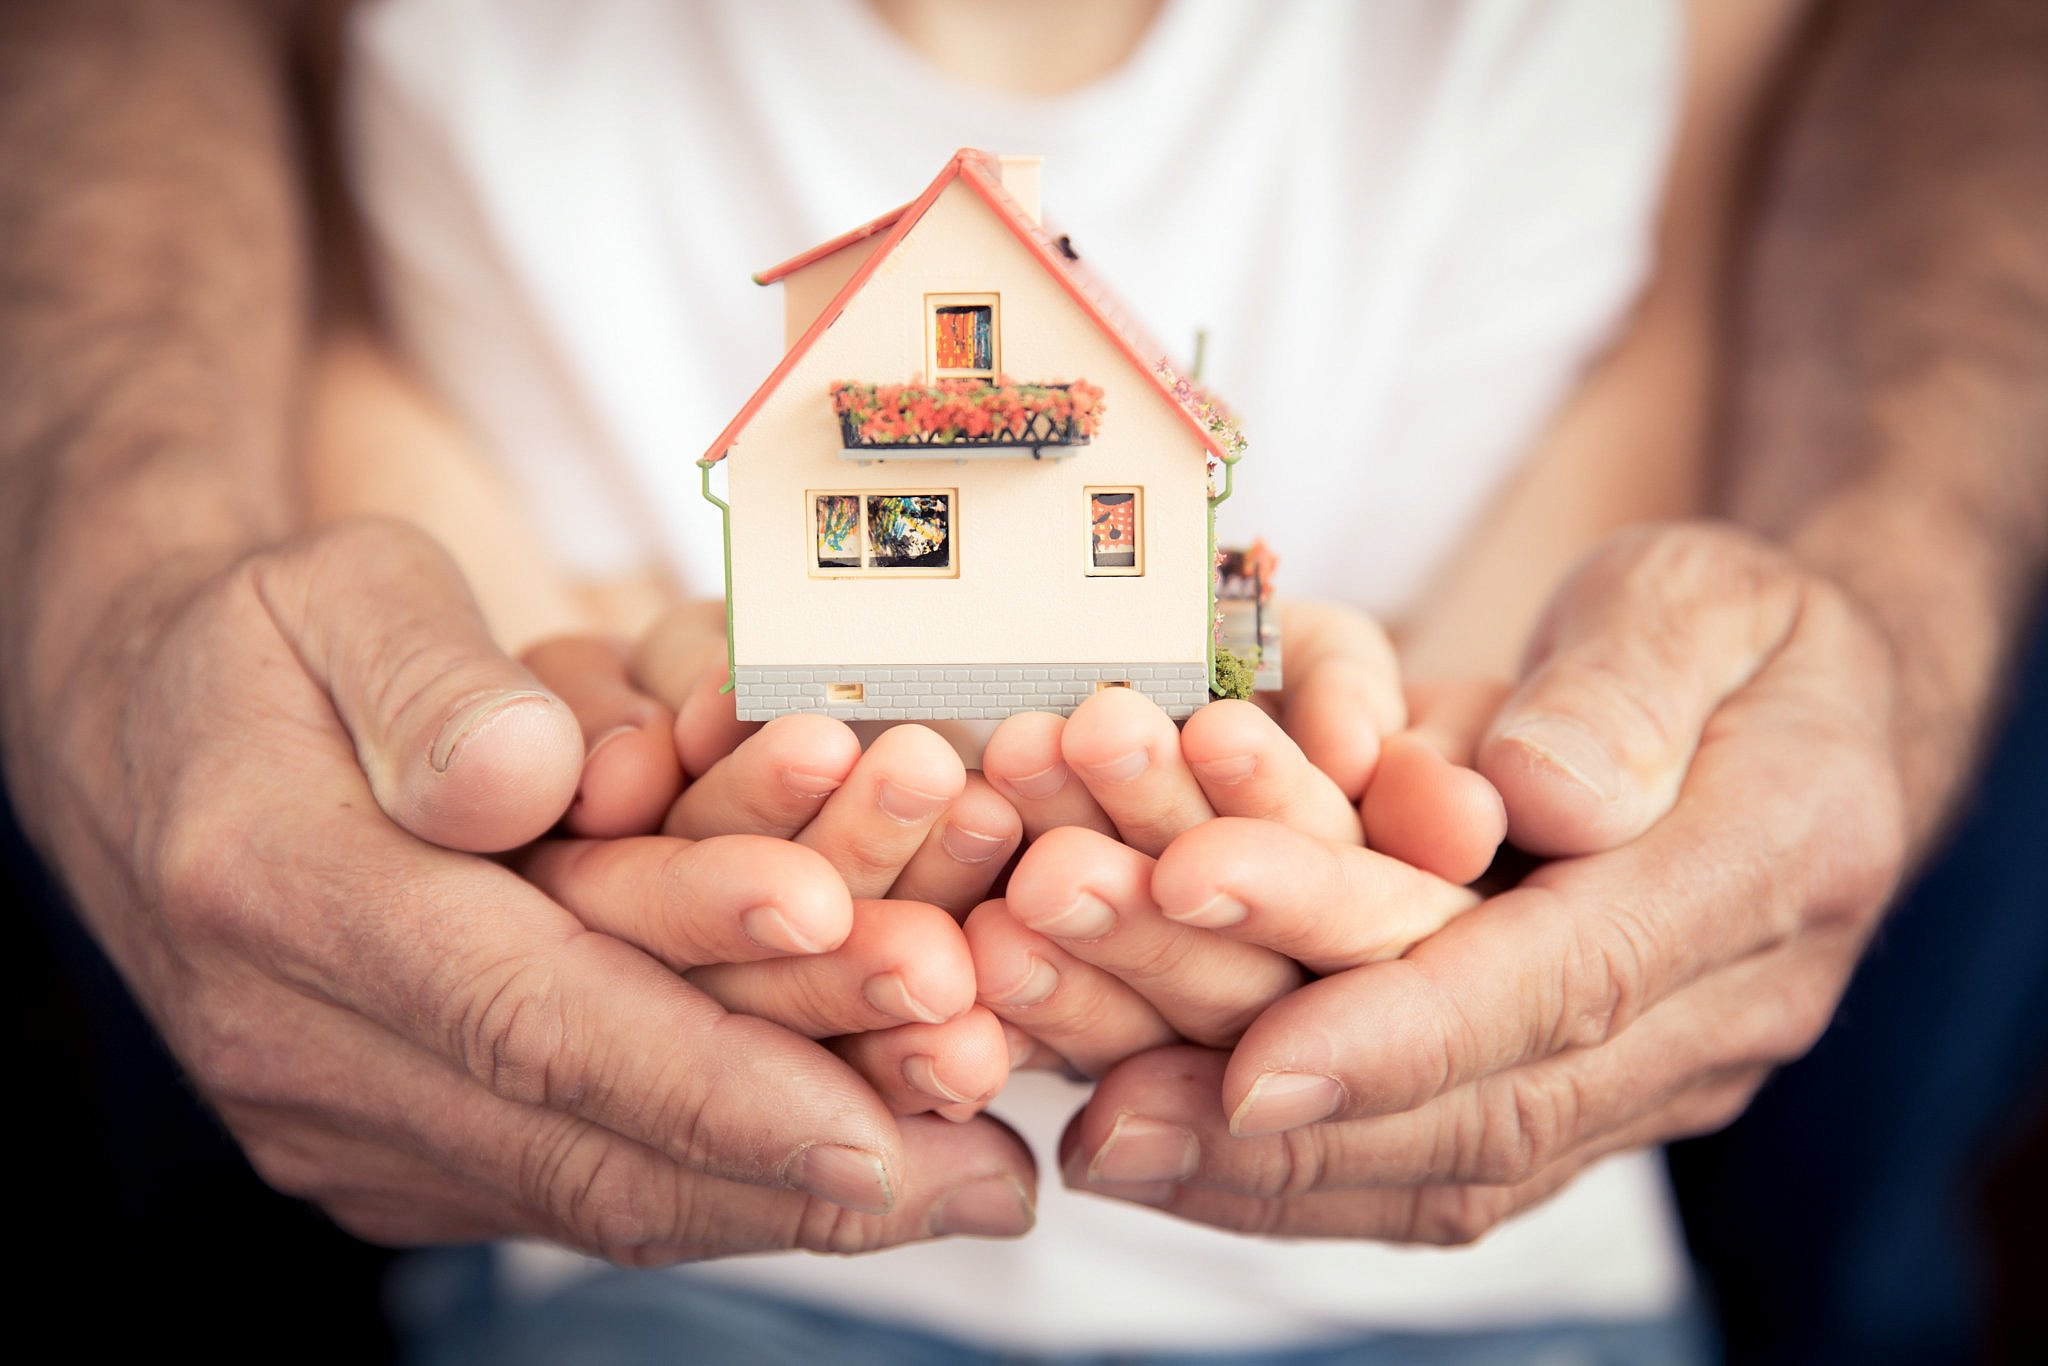 Нижегородские семьи получат выплату на покупку жилья